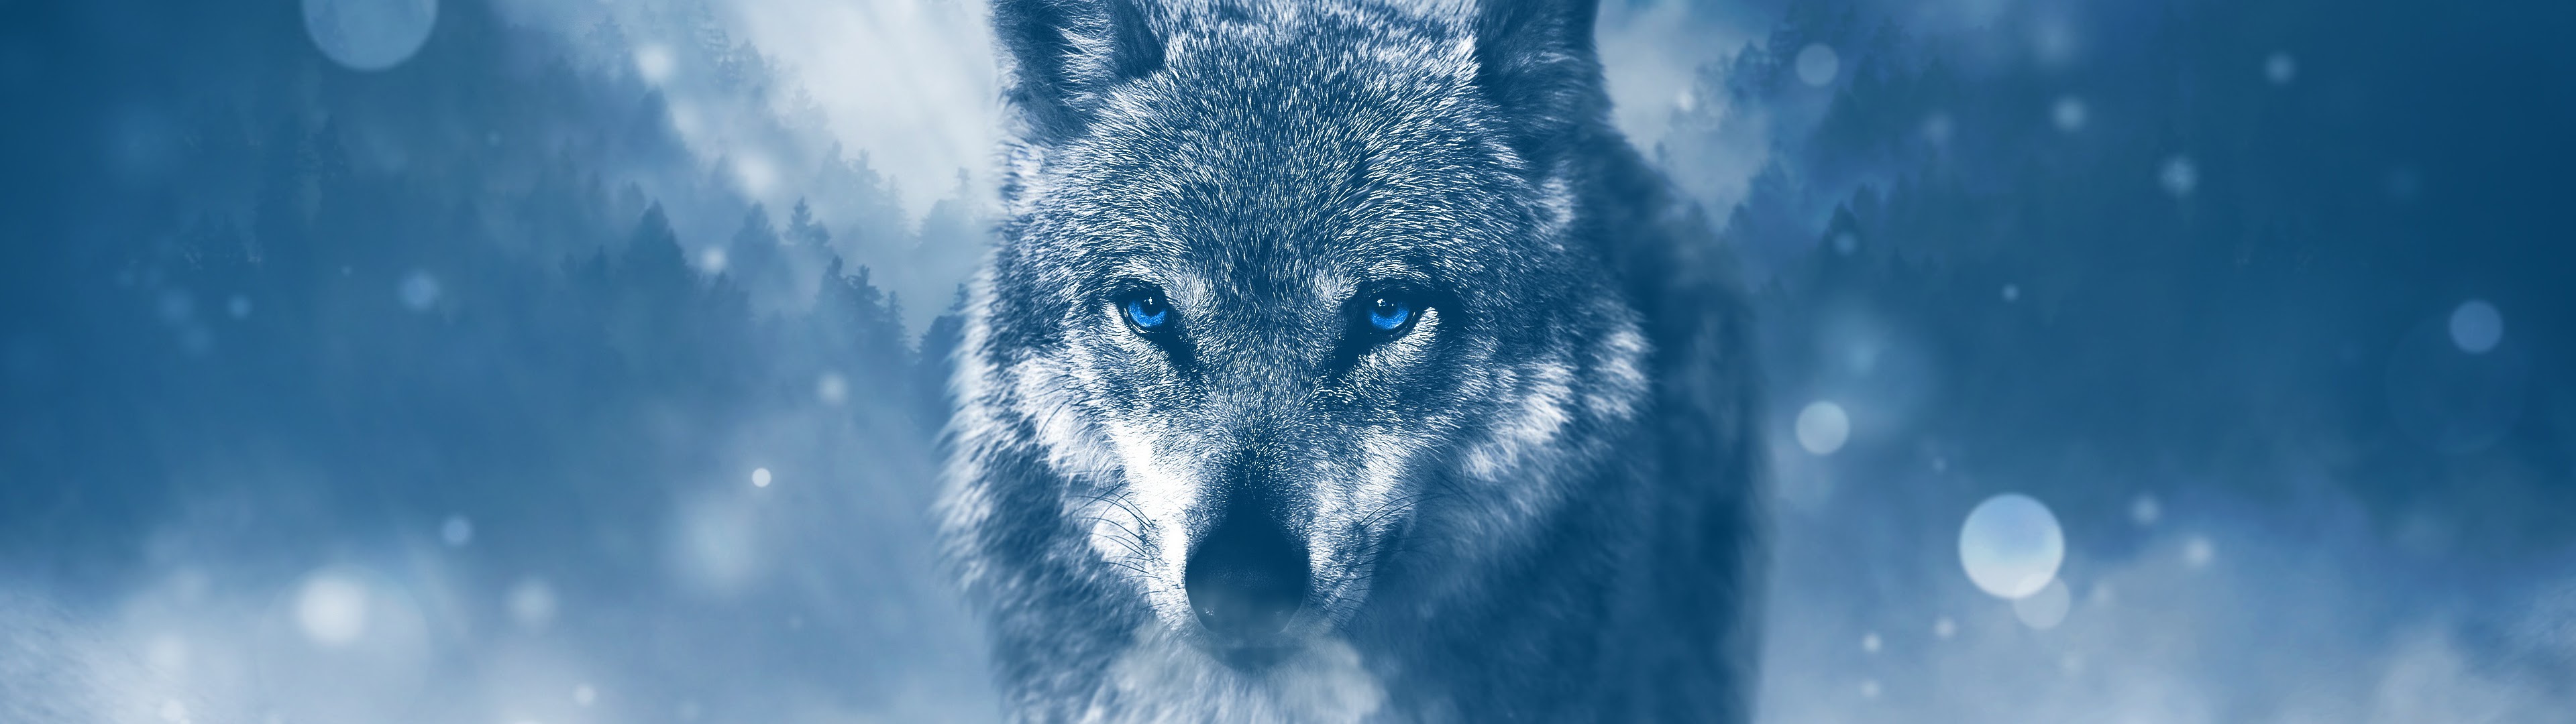 Wolf, 4k, 3840x2160, - Wolf Background - HD Wallpaper 